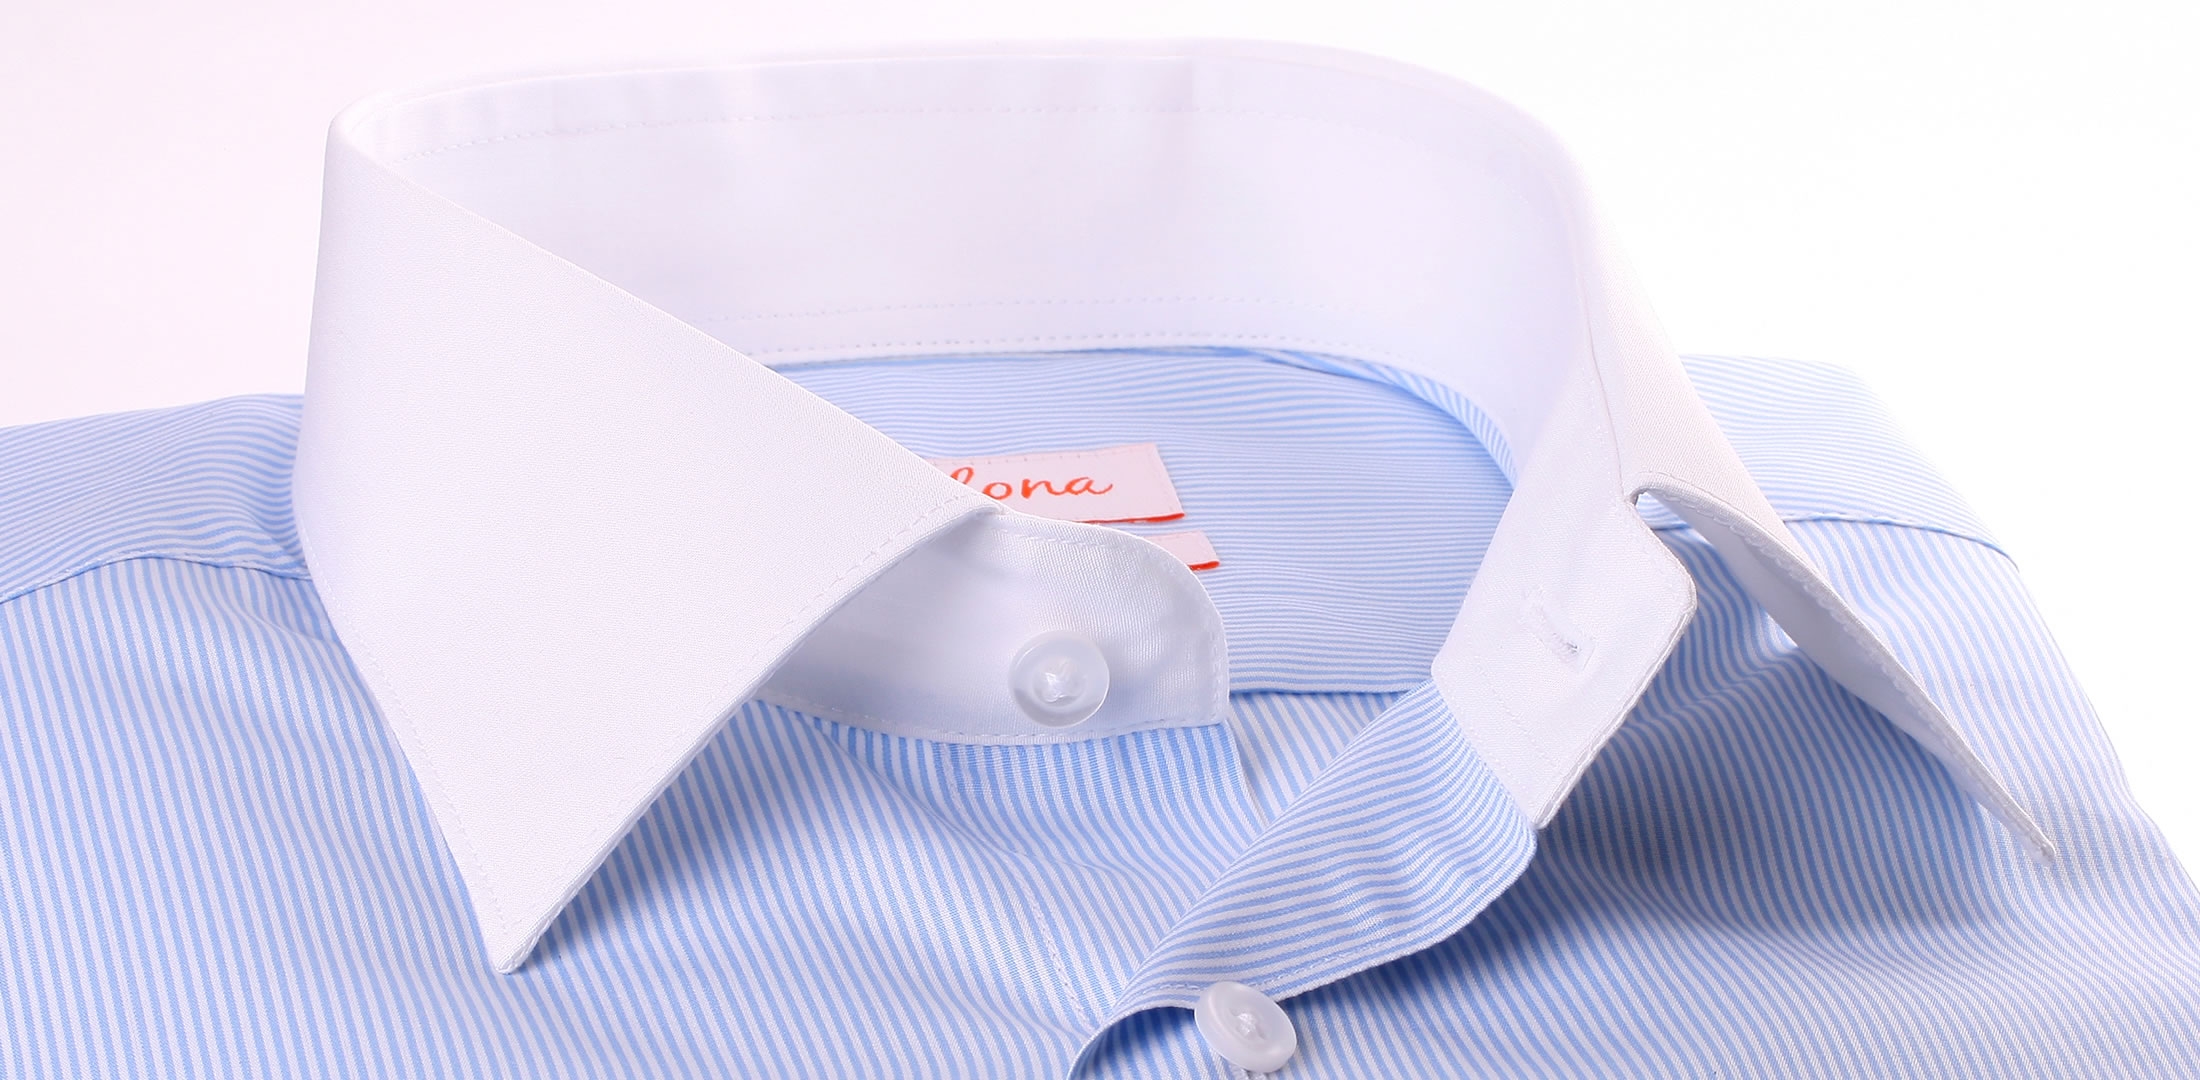 Weiß und blau gestreiftes Hemd mit weißem Kragen und Manschetten